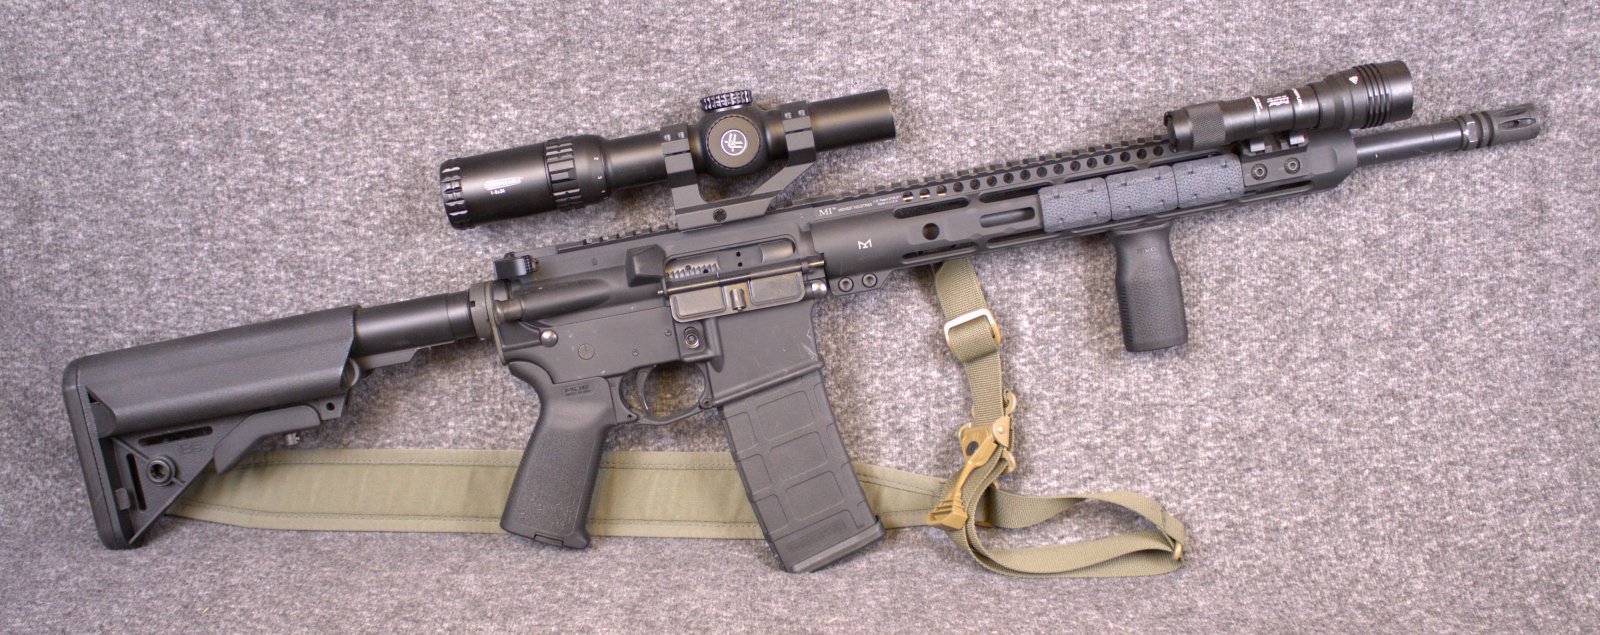 AR-15.jpg